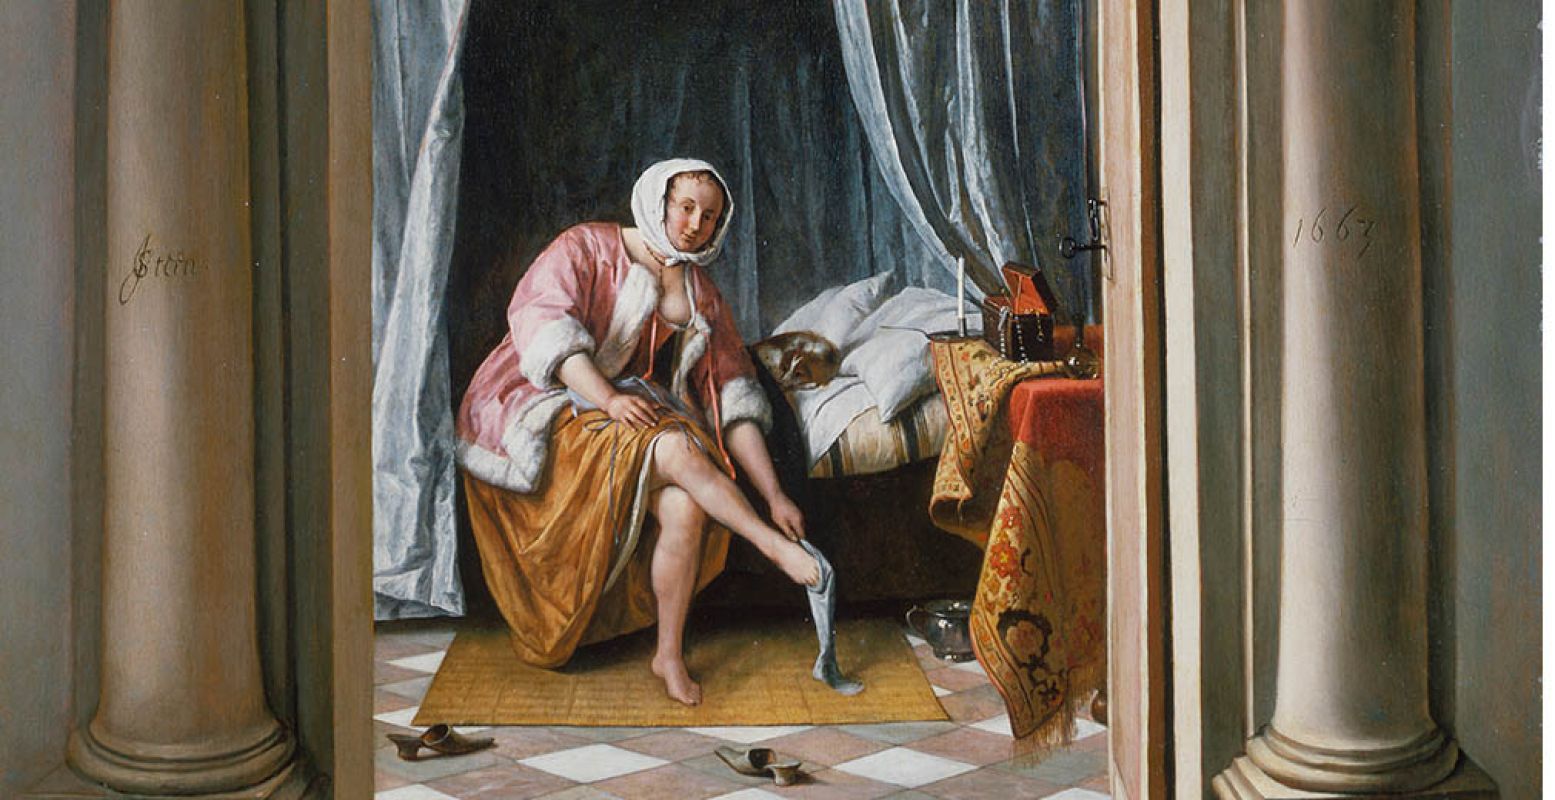 Jan Steen, 'Vrouw in een slaapkamer', 1663, Royal Collection Trust / © Hare Majesteit Koningin Elizabeth II 2016